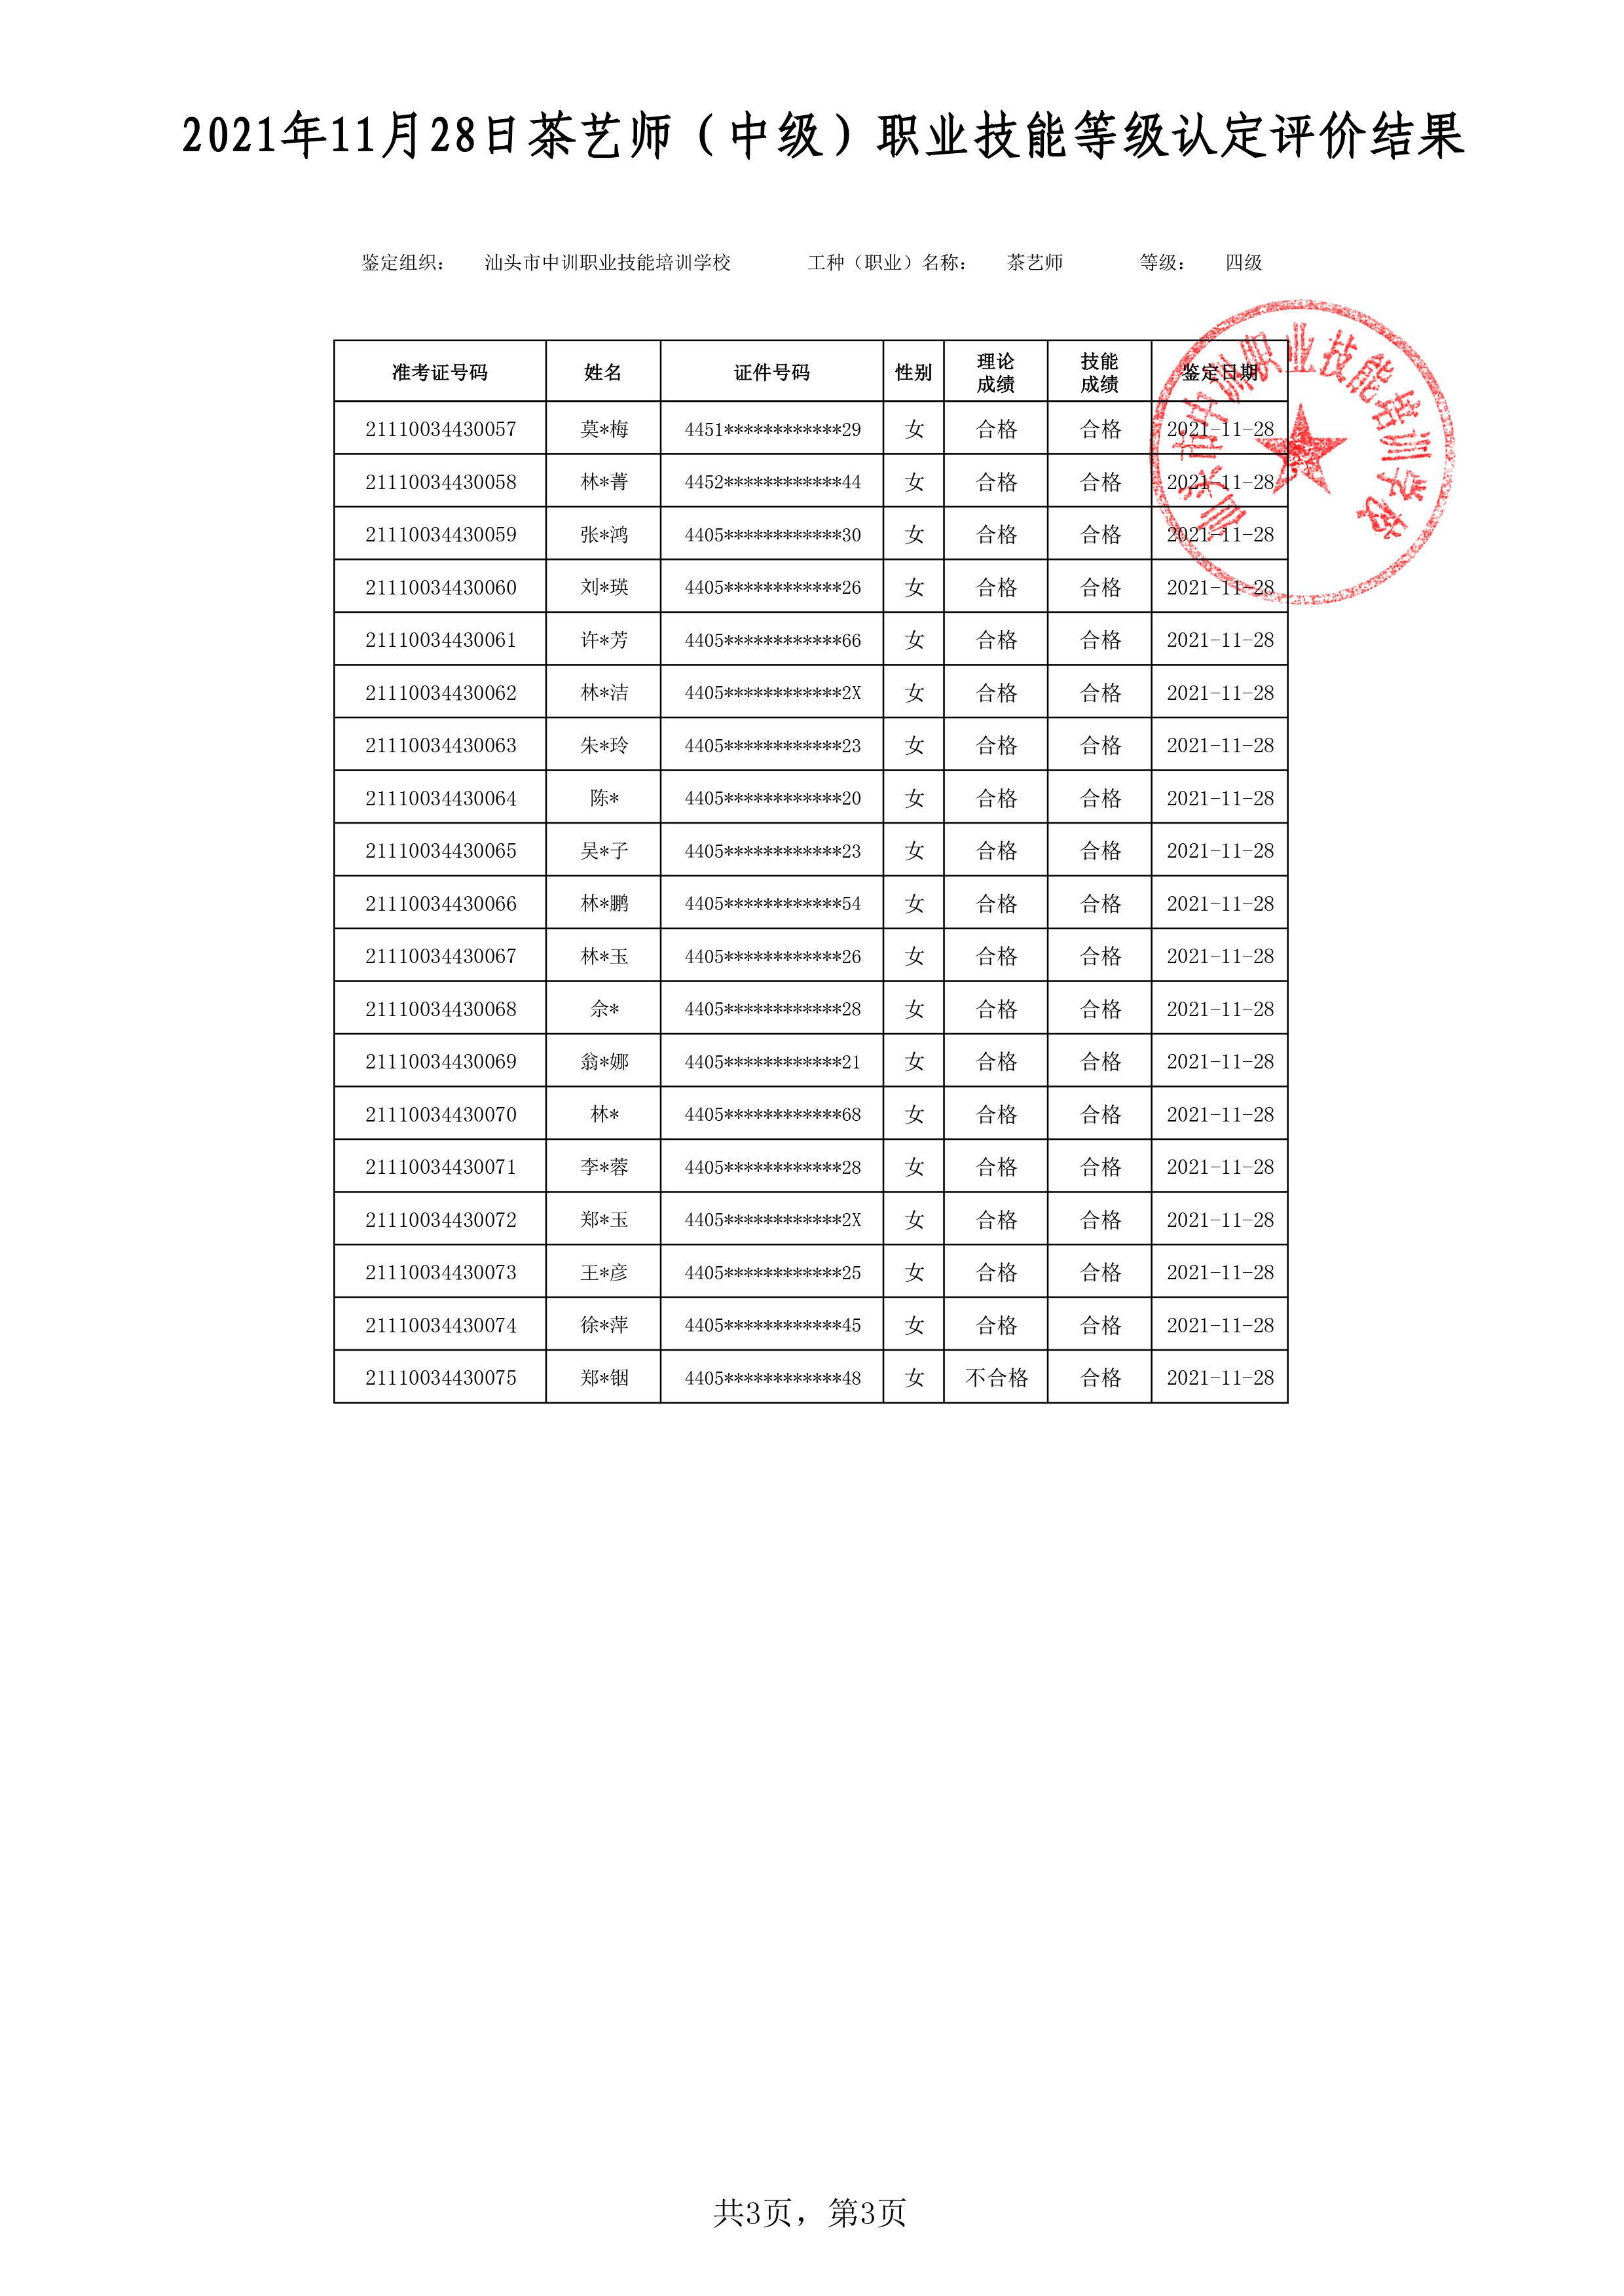 21-11-28四级茶艺师考试鉴定名册表-3 副本.jpg